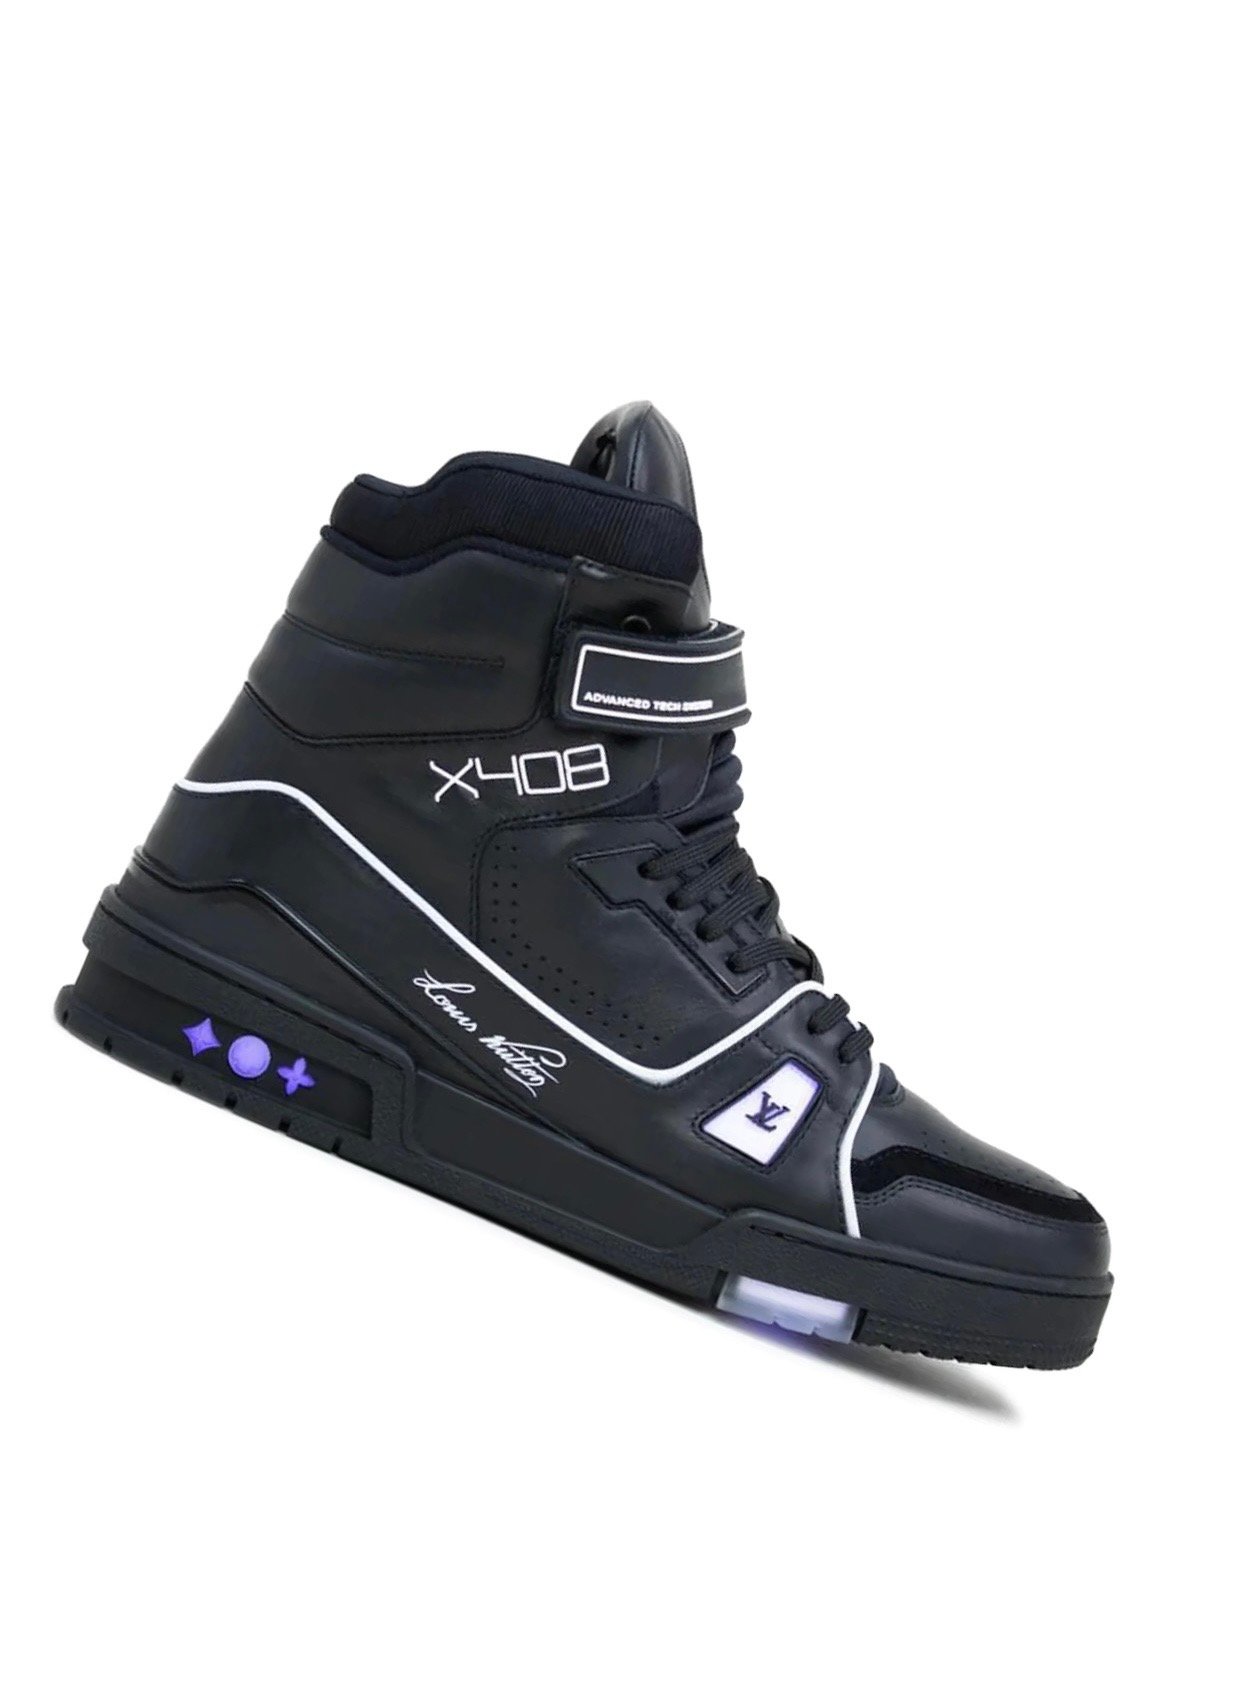 LV X408 shoes 